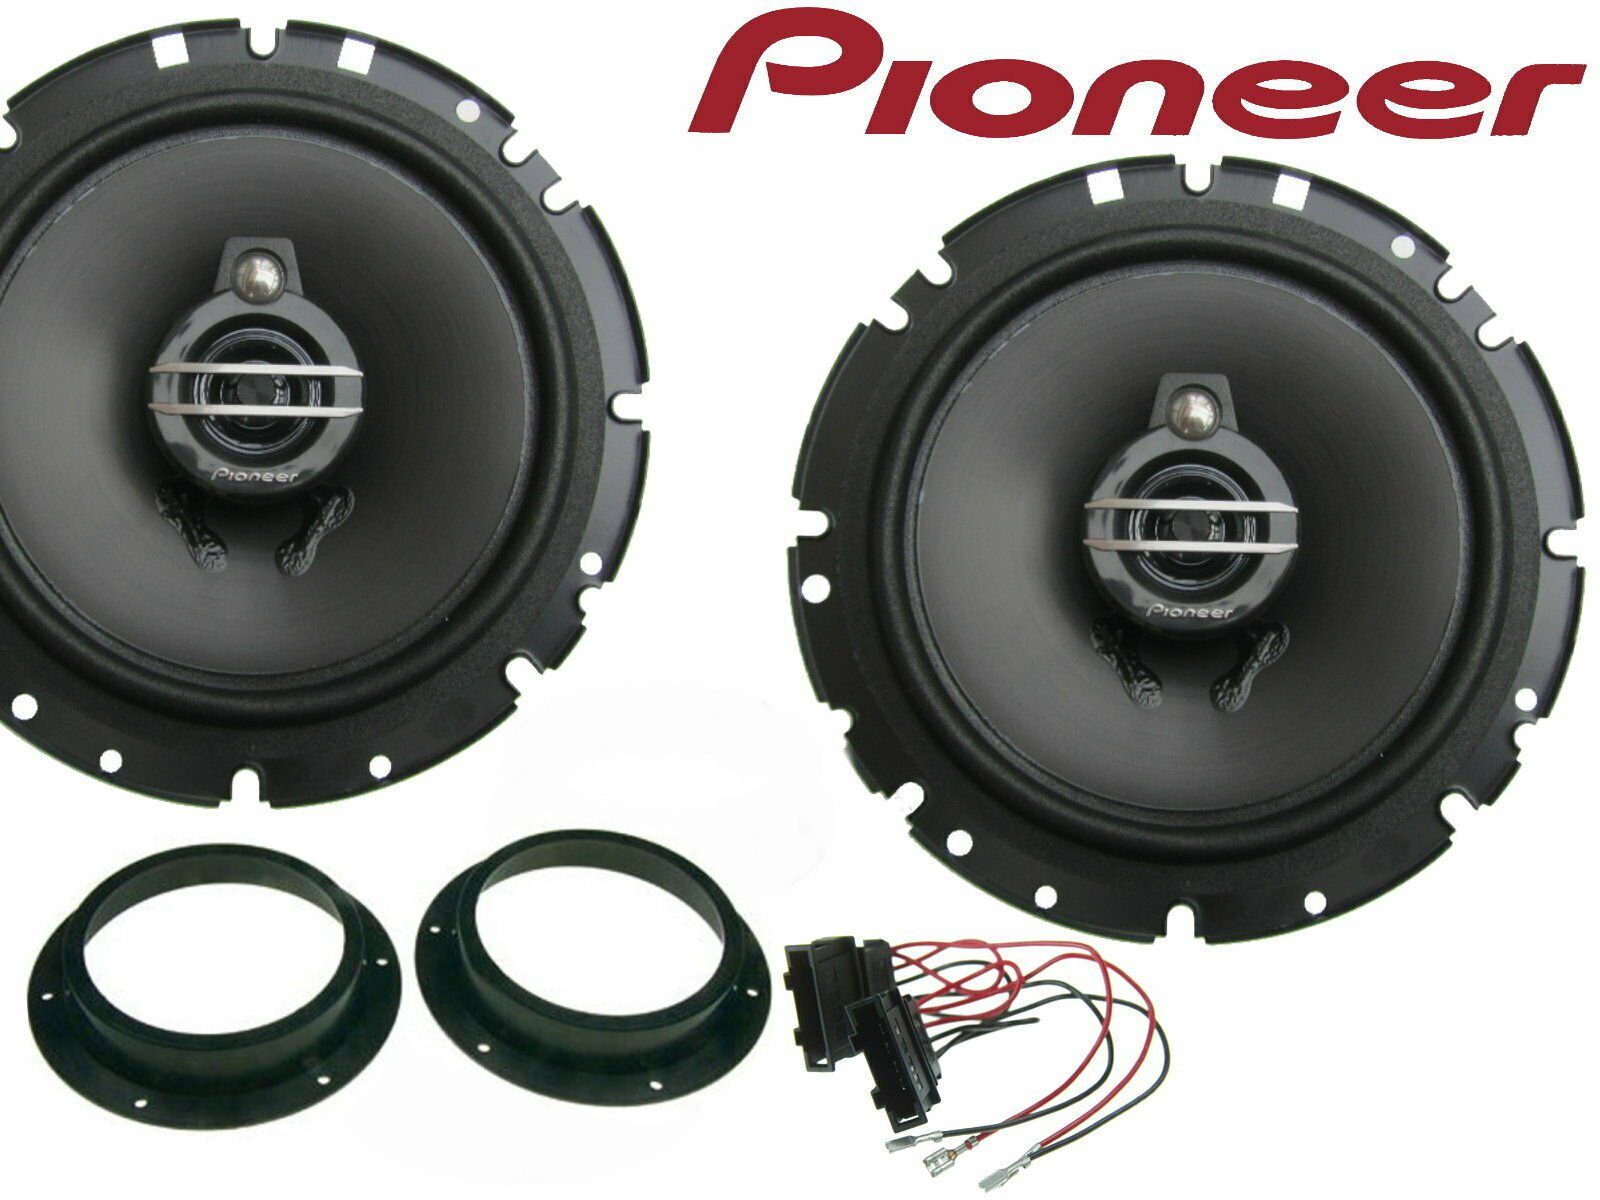 DSX Pioneer 3 Wege passend für VW Golf 5 03-20 Set Tür Vorn 300 Watt Auto-Lautsprecher (40 W)